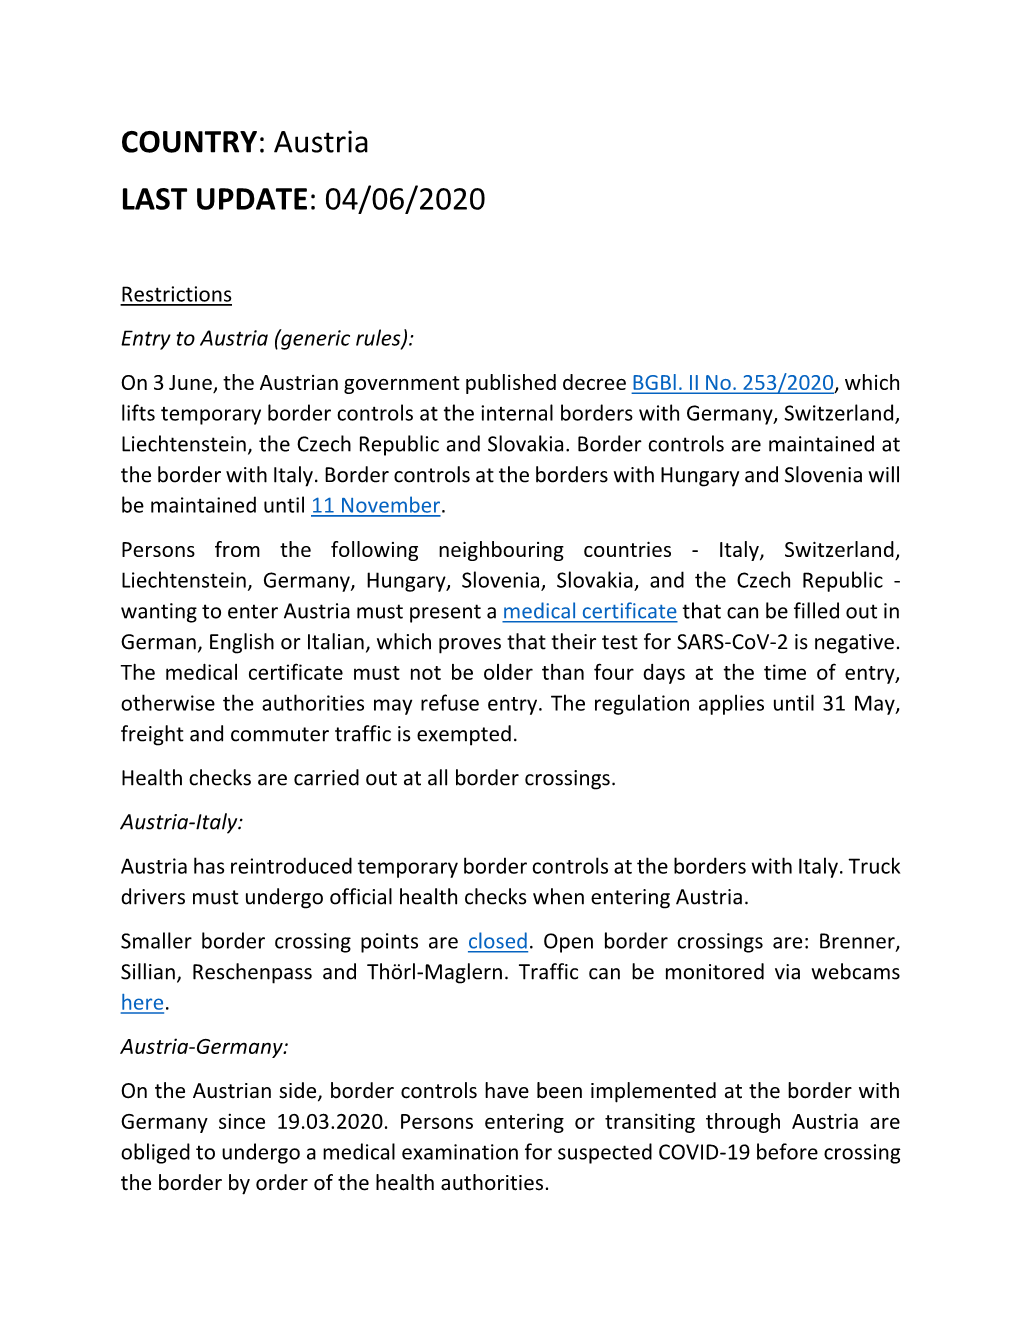 Austria LAST UPDATE: 04/06/2020